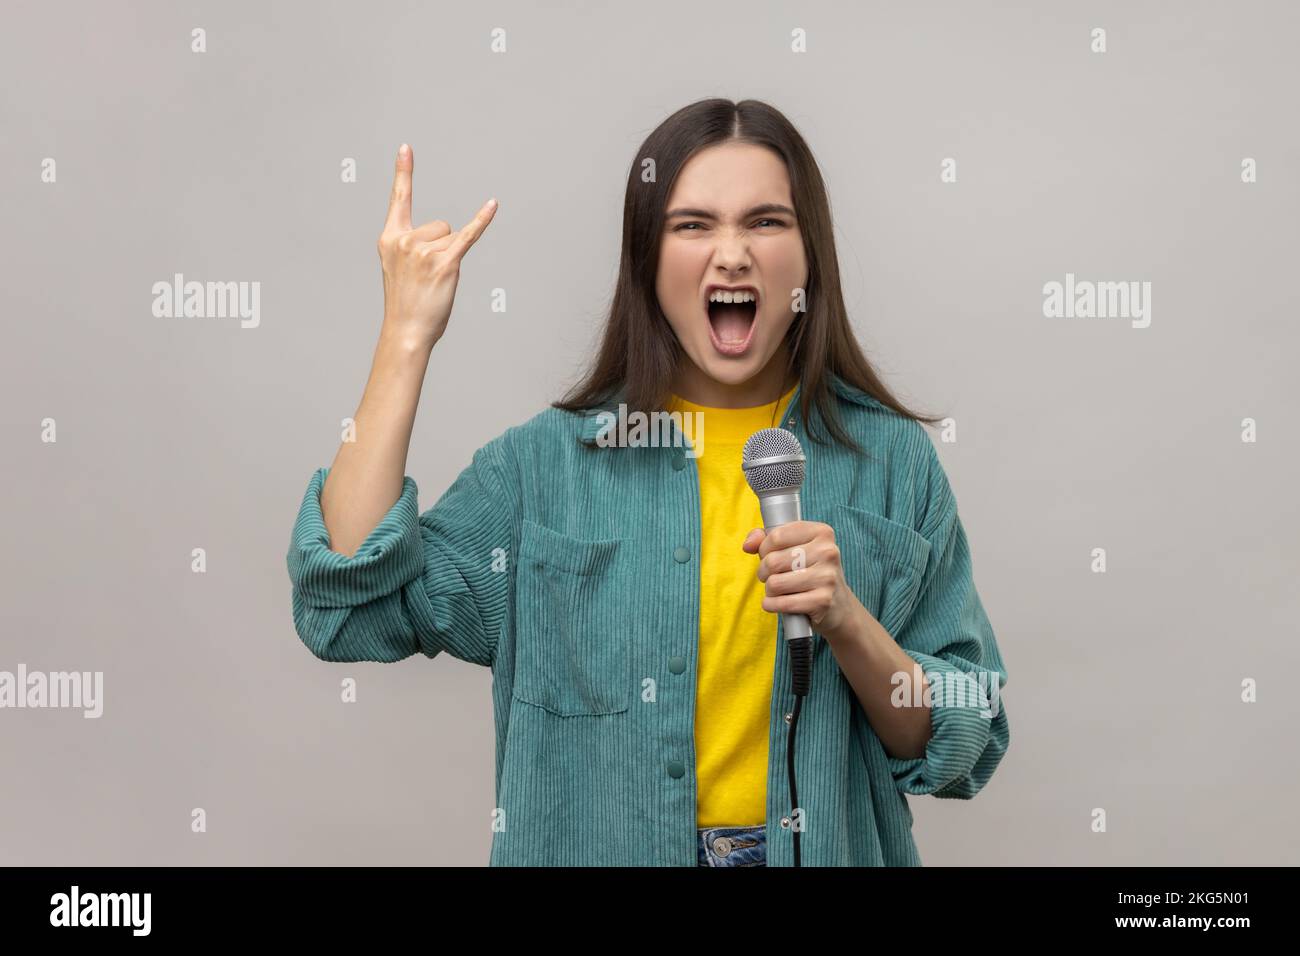 Portrait d'une femme attrayante avec des cheveux sombres chantant des chansons préférées avec un microphone et montrant le rock and roll geste, en portant une veste de style décontracté. Prise de vue en studio isolée sur fond gris. Banque D'Images